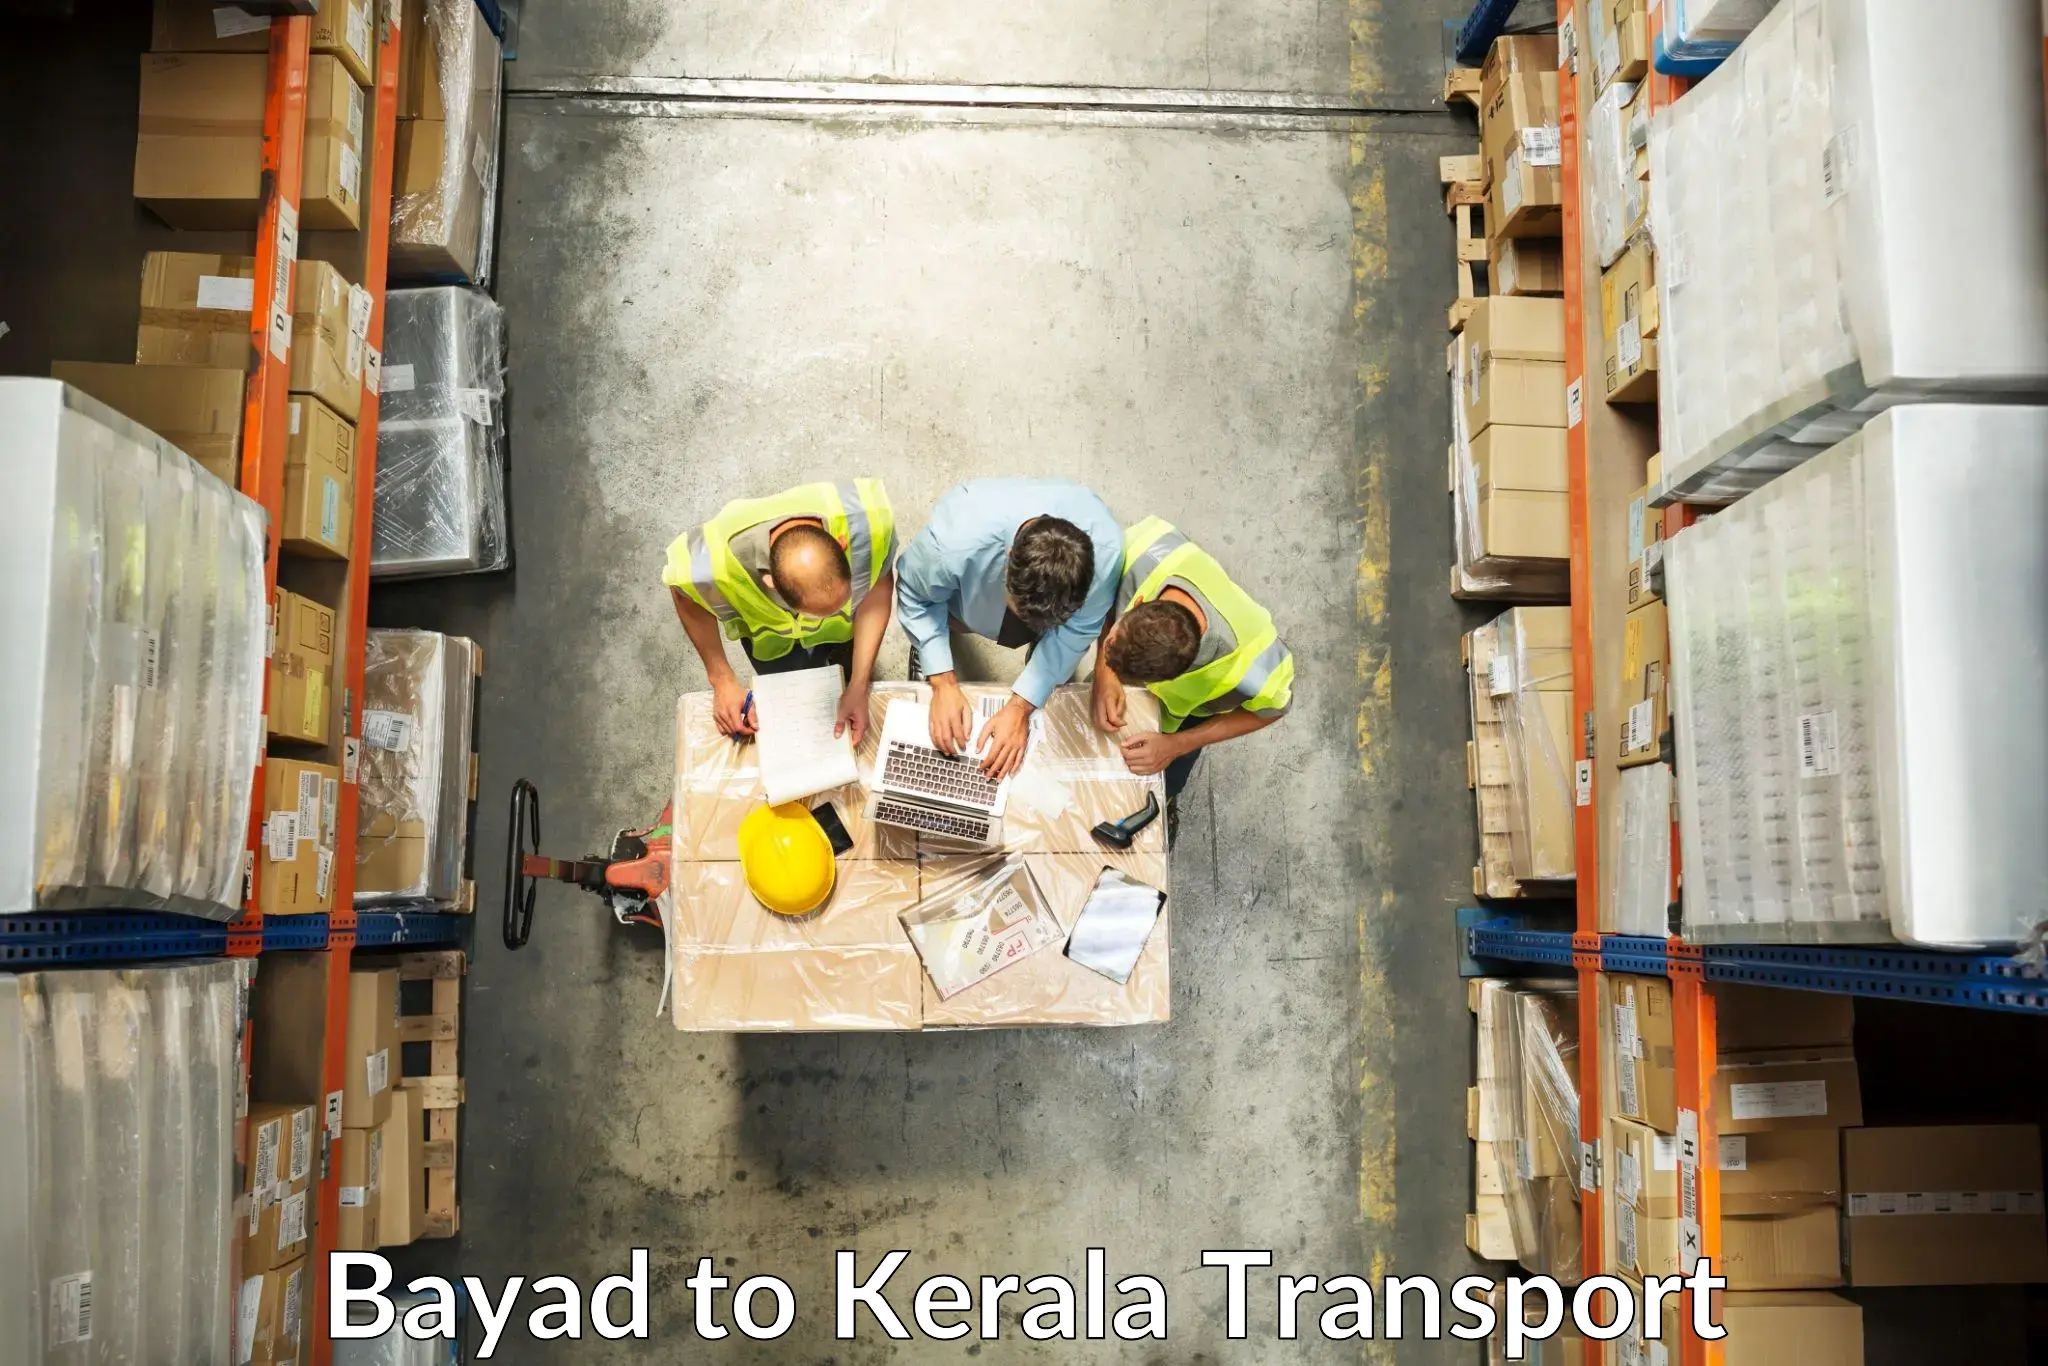 Transport shared services in Bayad to Alathur Malabar